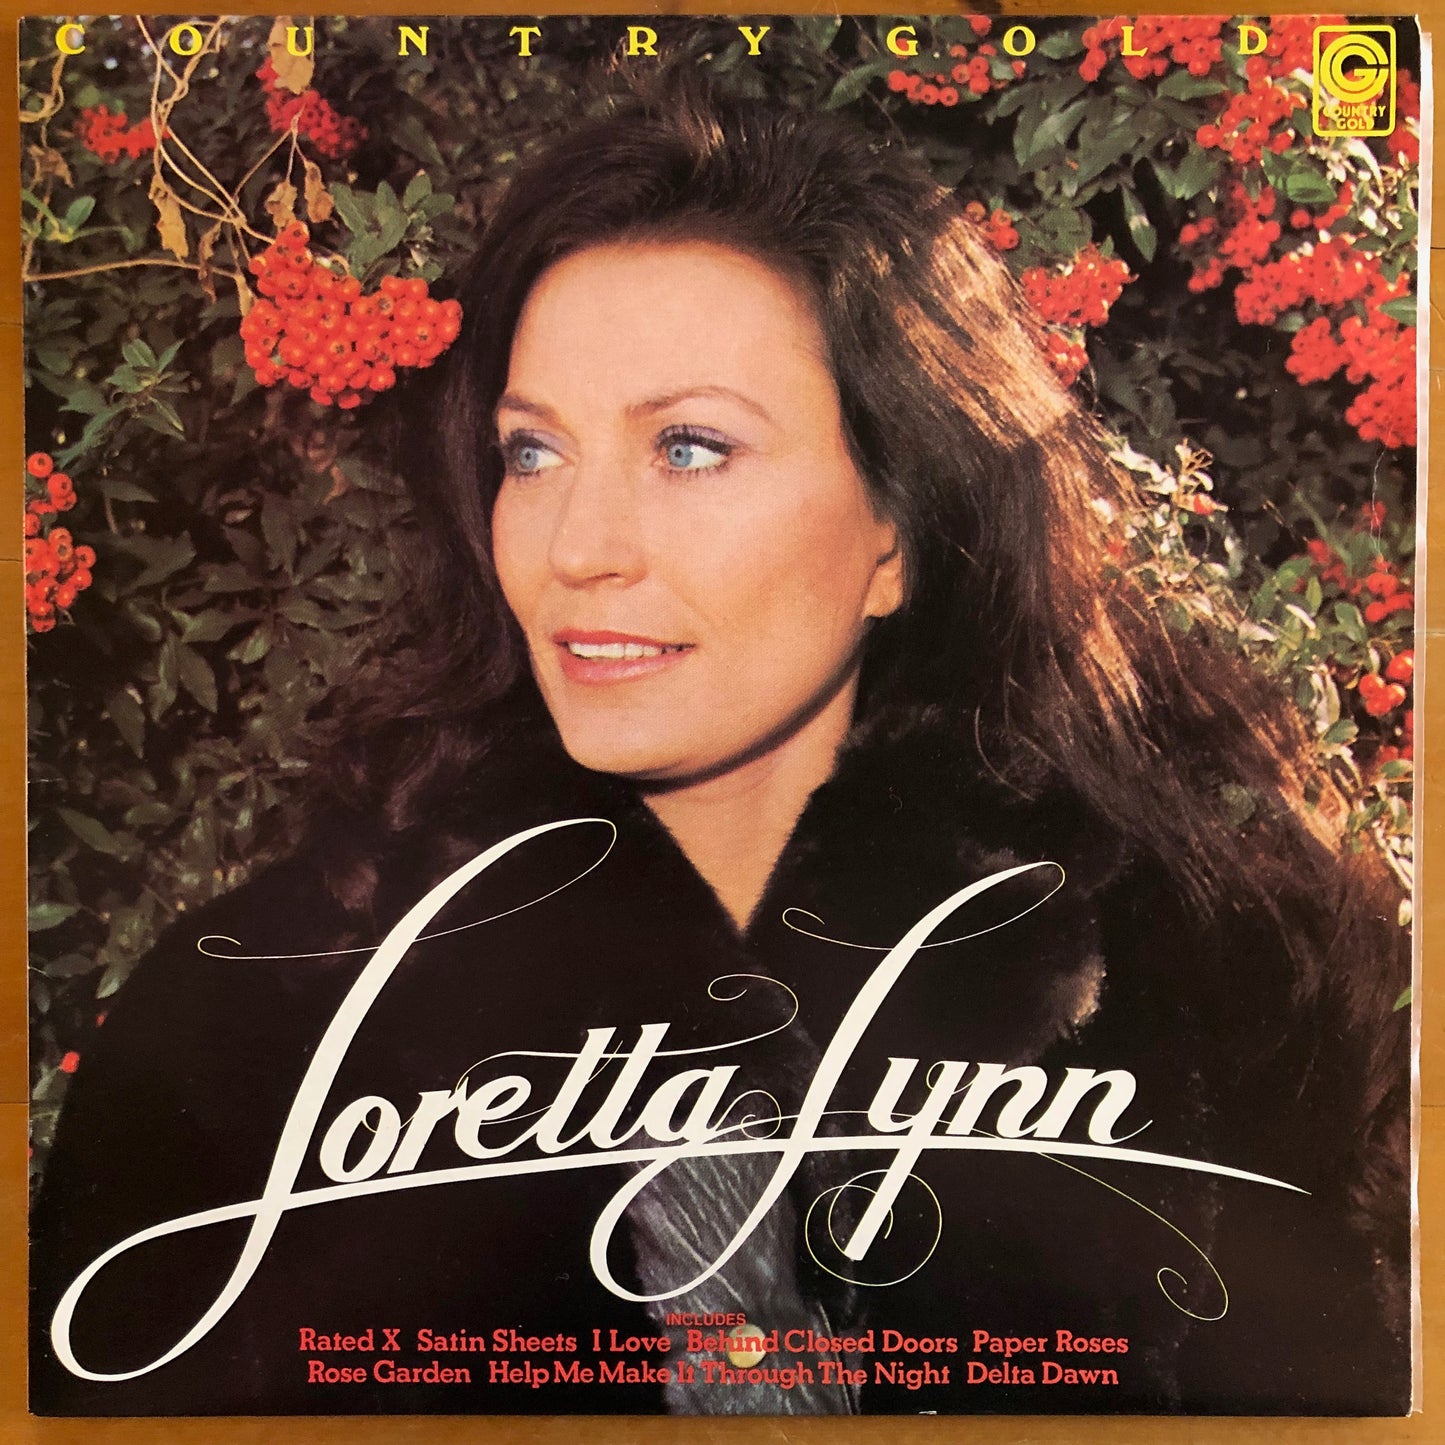 Loretta Lynn - Country Gold